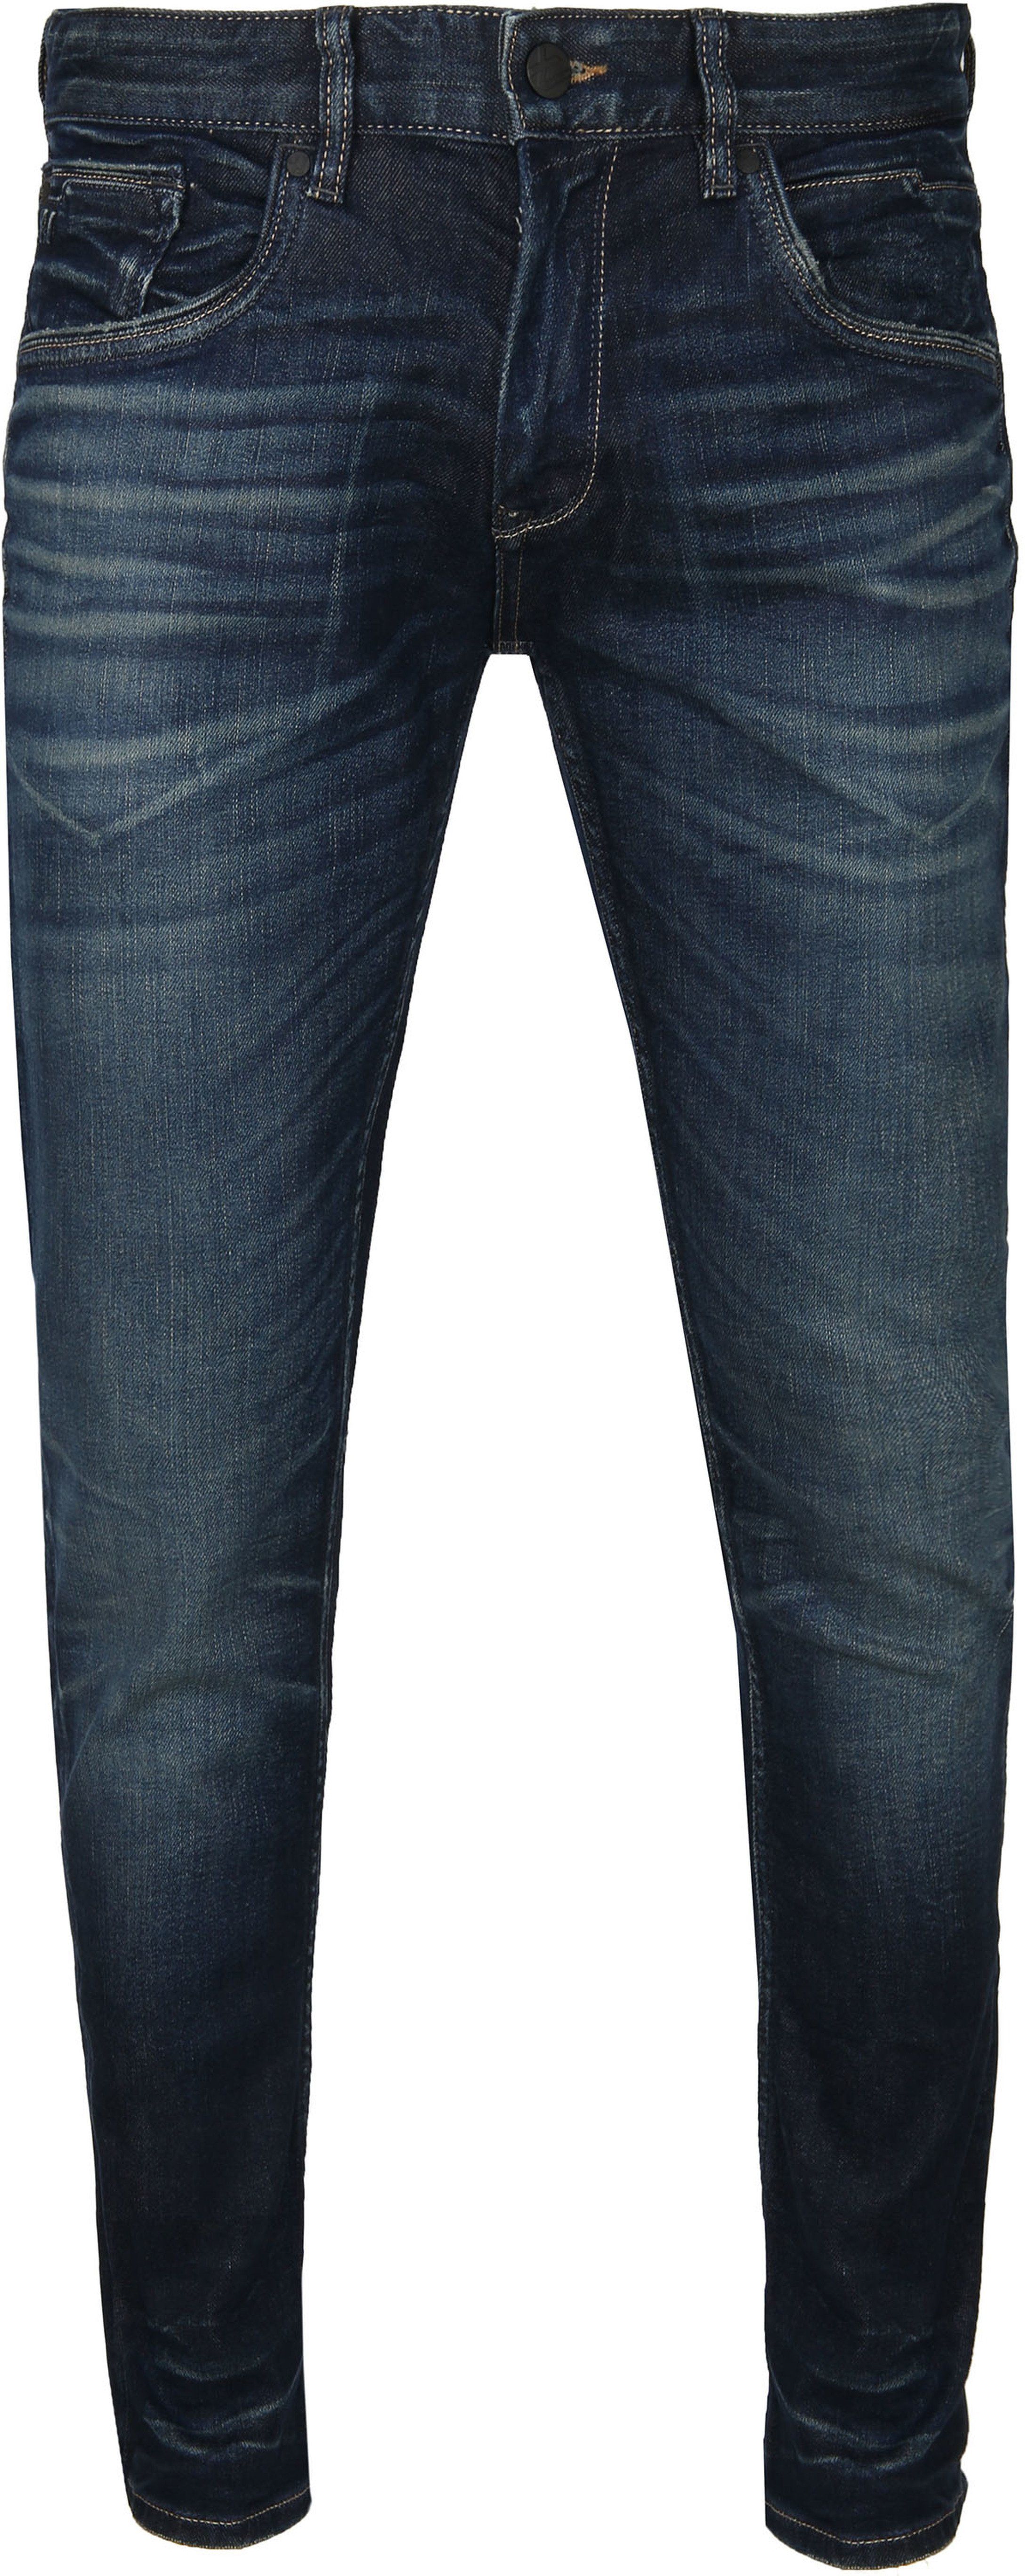 PME Legend XV Jeans Stretch Darkblue PTR150-DBD Dark Blue Blue size W 31